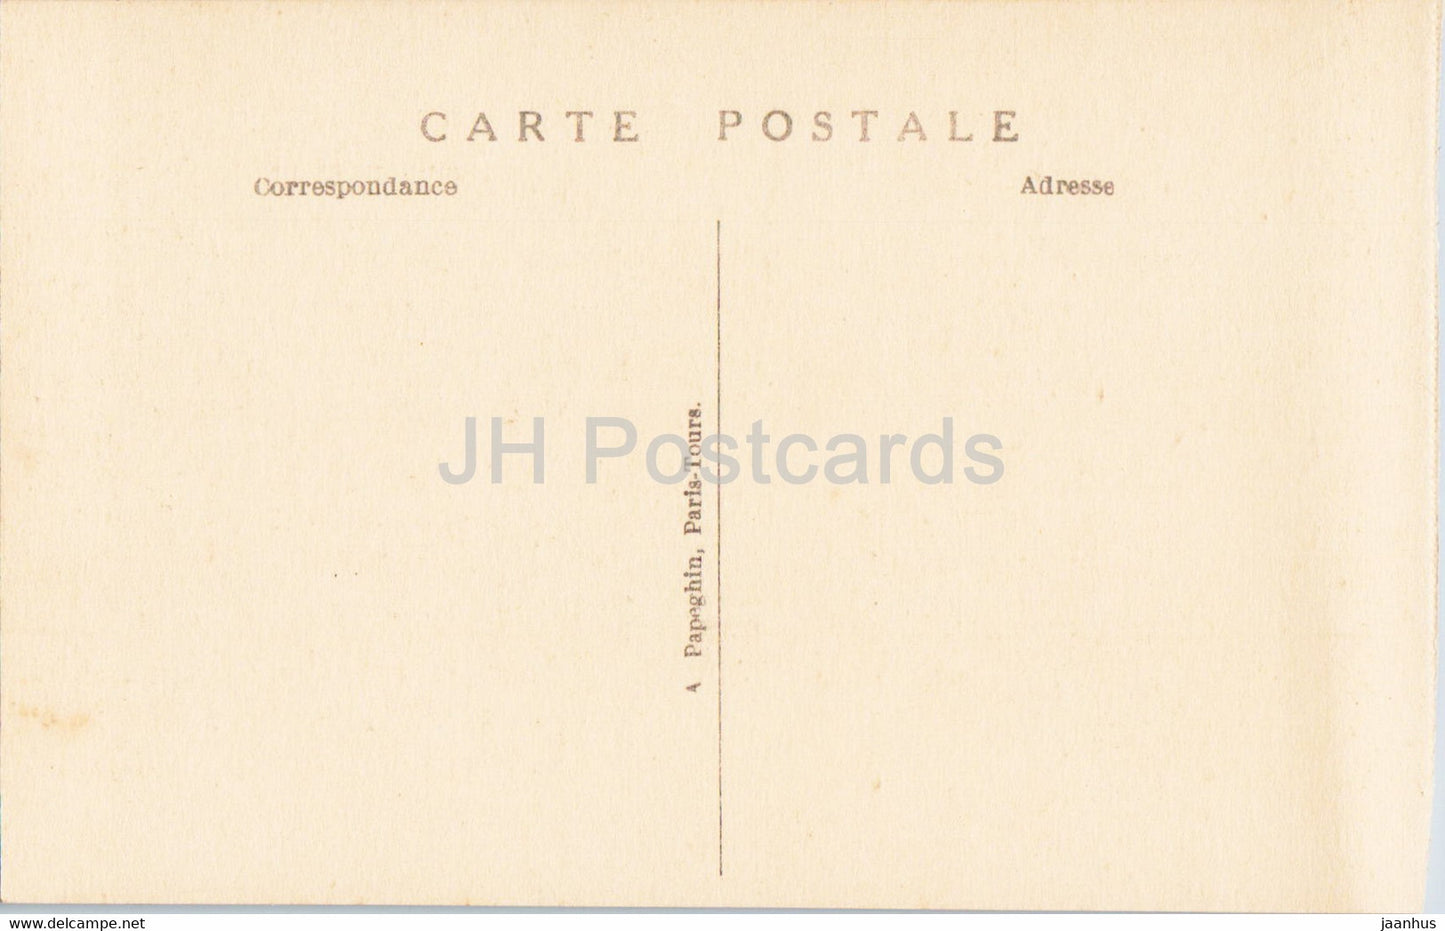 Palais de Versailles - Le Salon de la Pendule - 113 - Salon der Uhr - alte Postkarte - Frankreich - unbenutzt